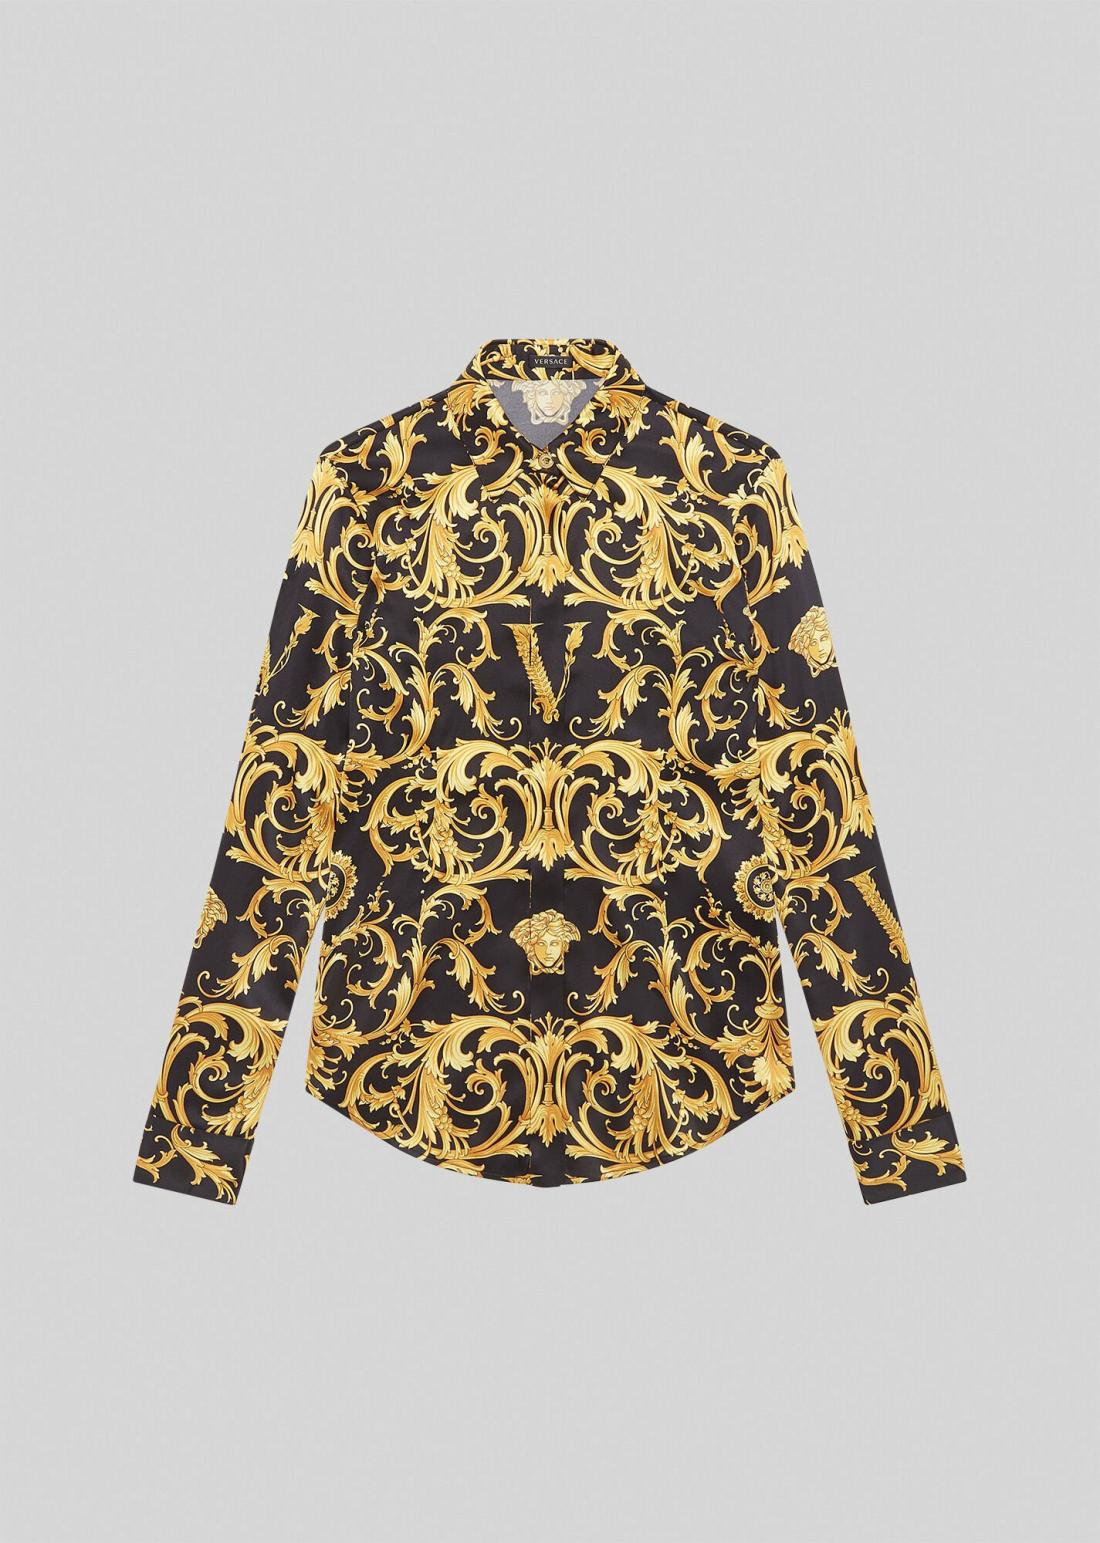 Camisas y Blusas Mujer | Versace Camisa de seda con el V Barroco Napolart